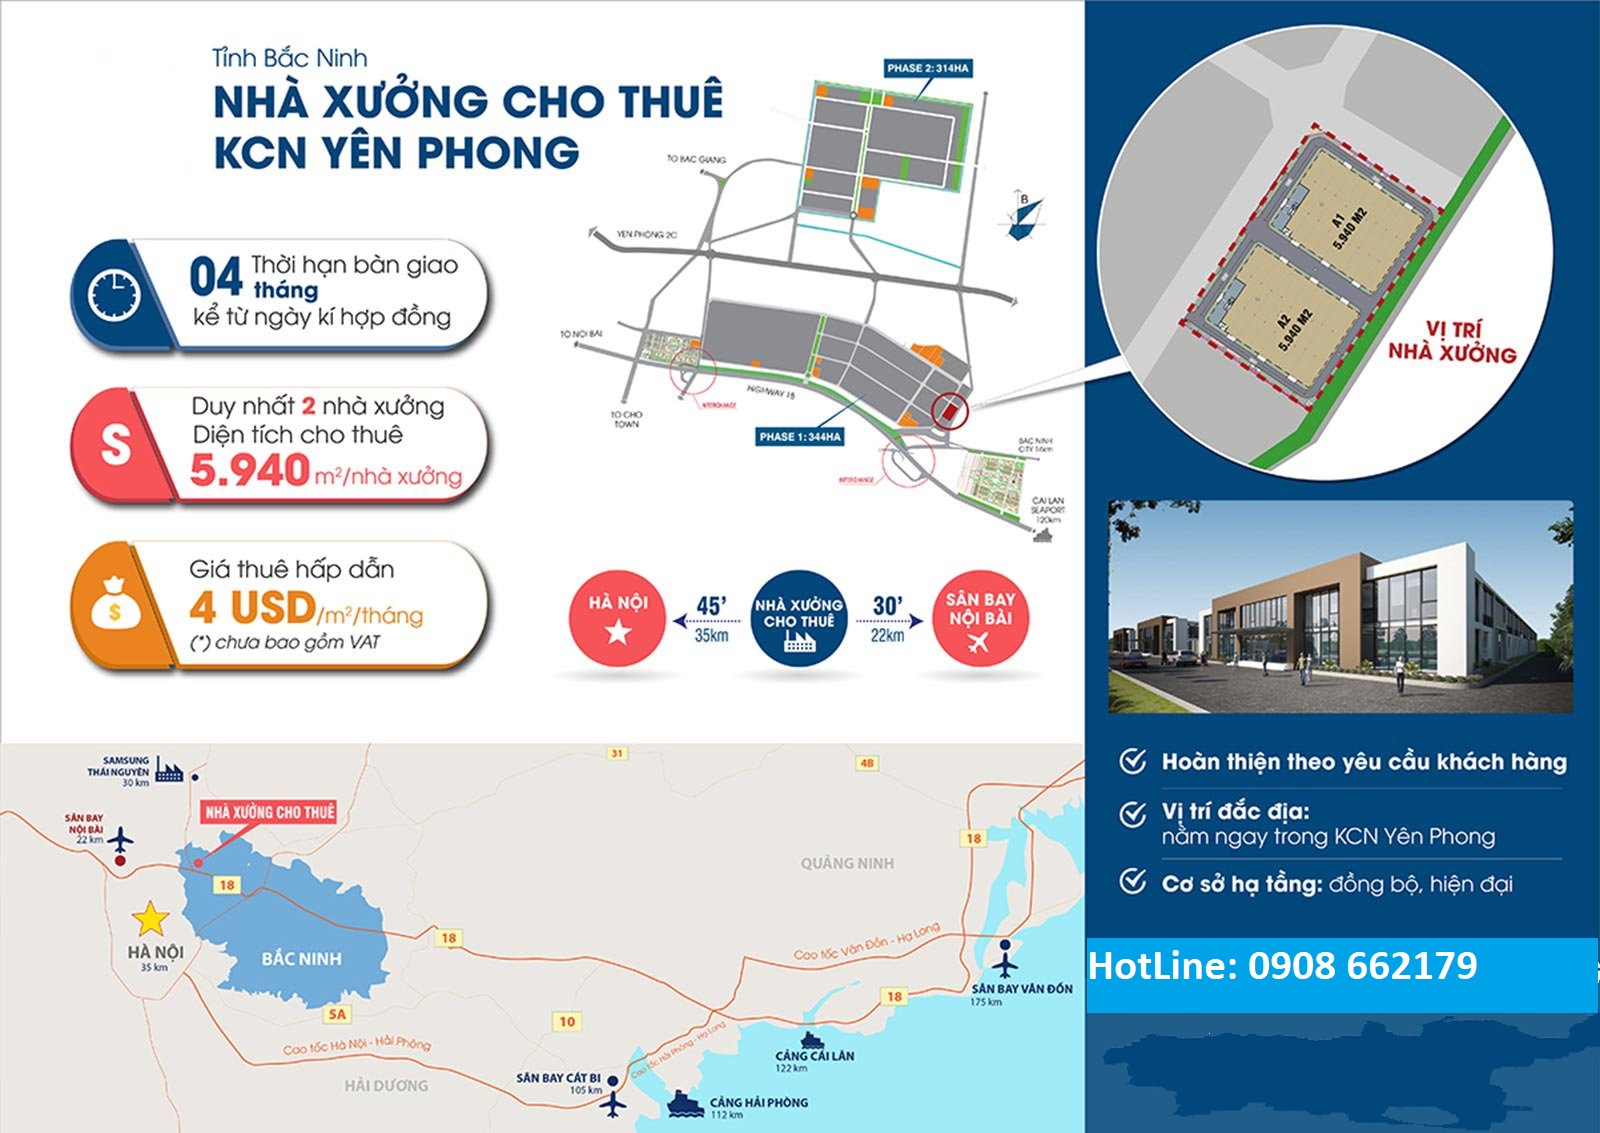 Cho thuê nhà xưởng 2 xưởng 5940m2 trong KCN Yên Phong, Bắc Ninh